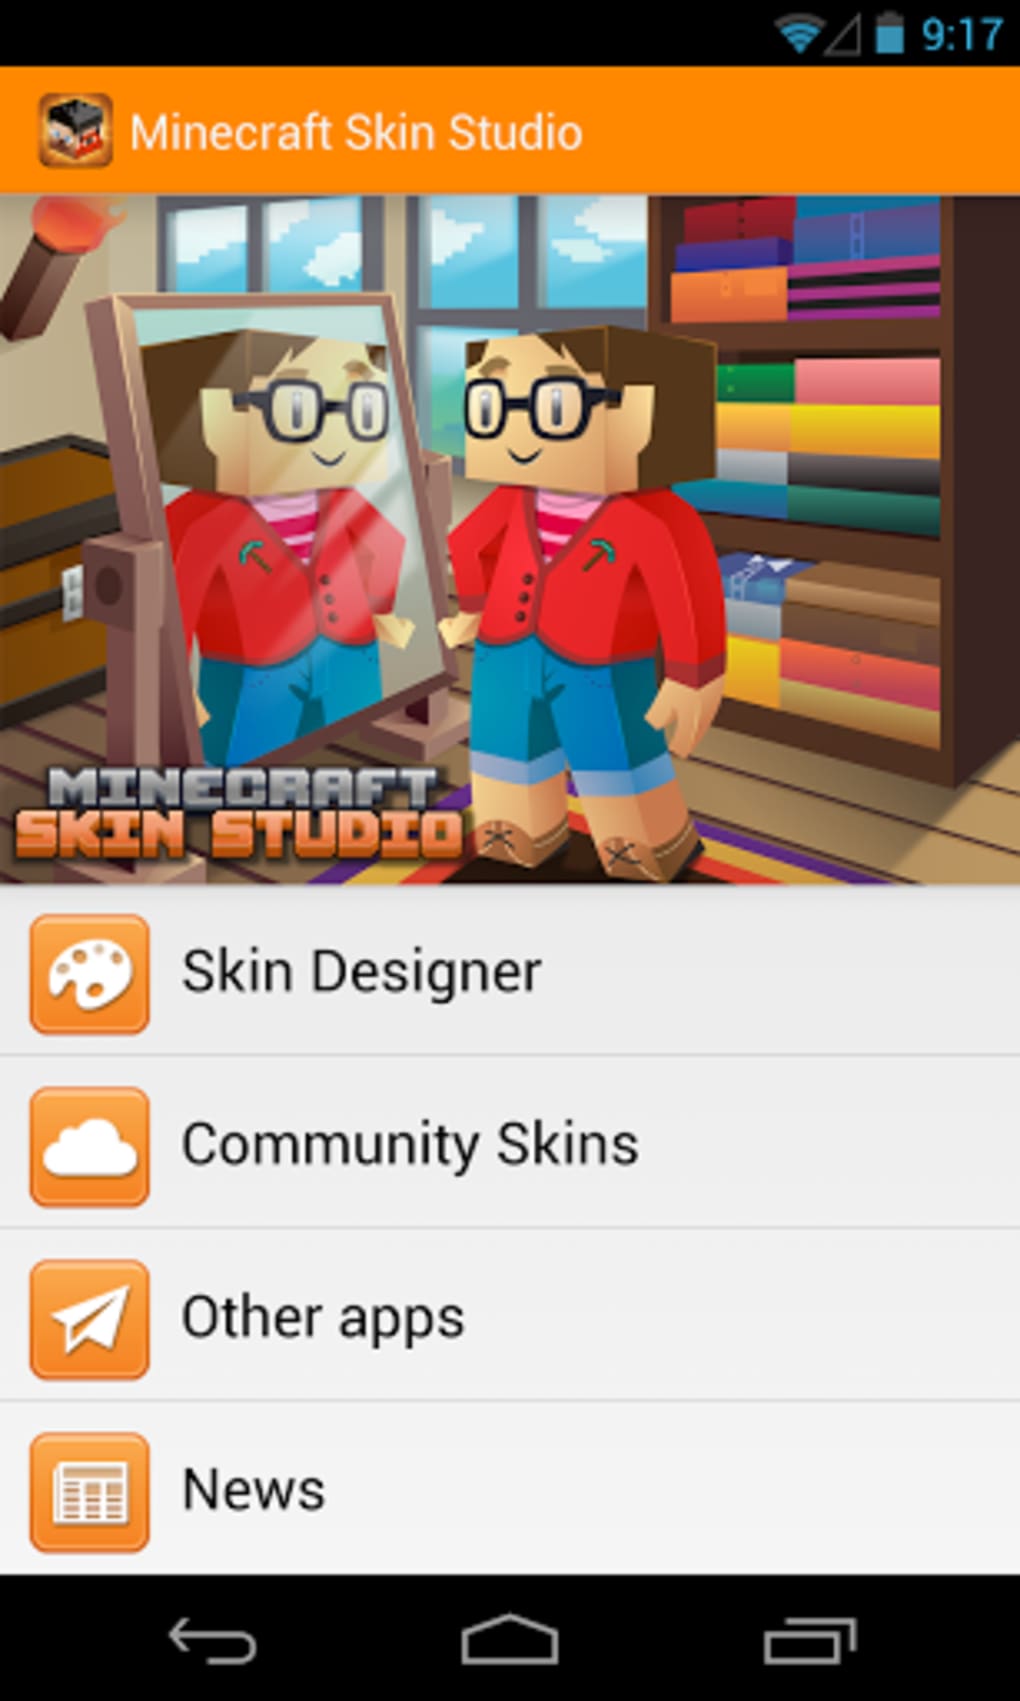 minecraft skin studio free download